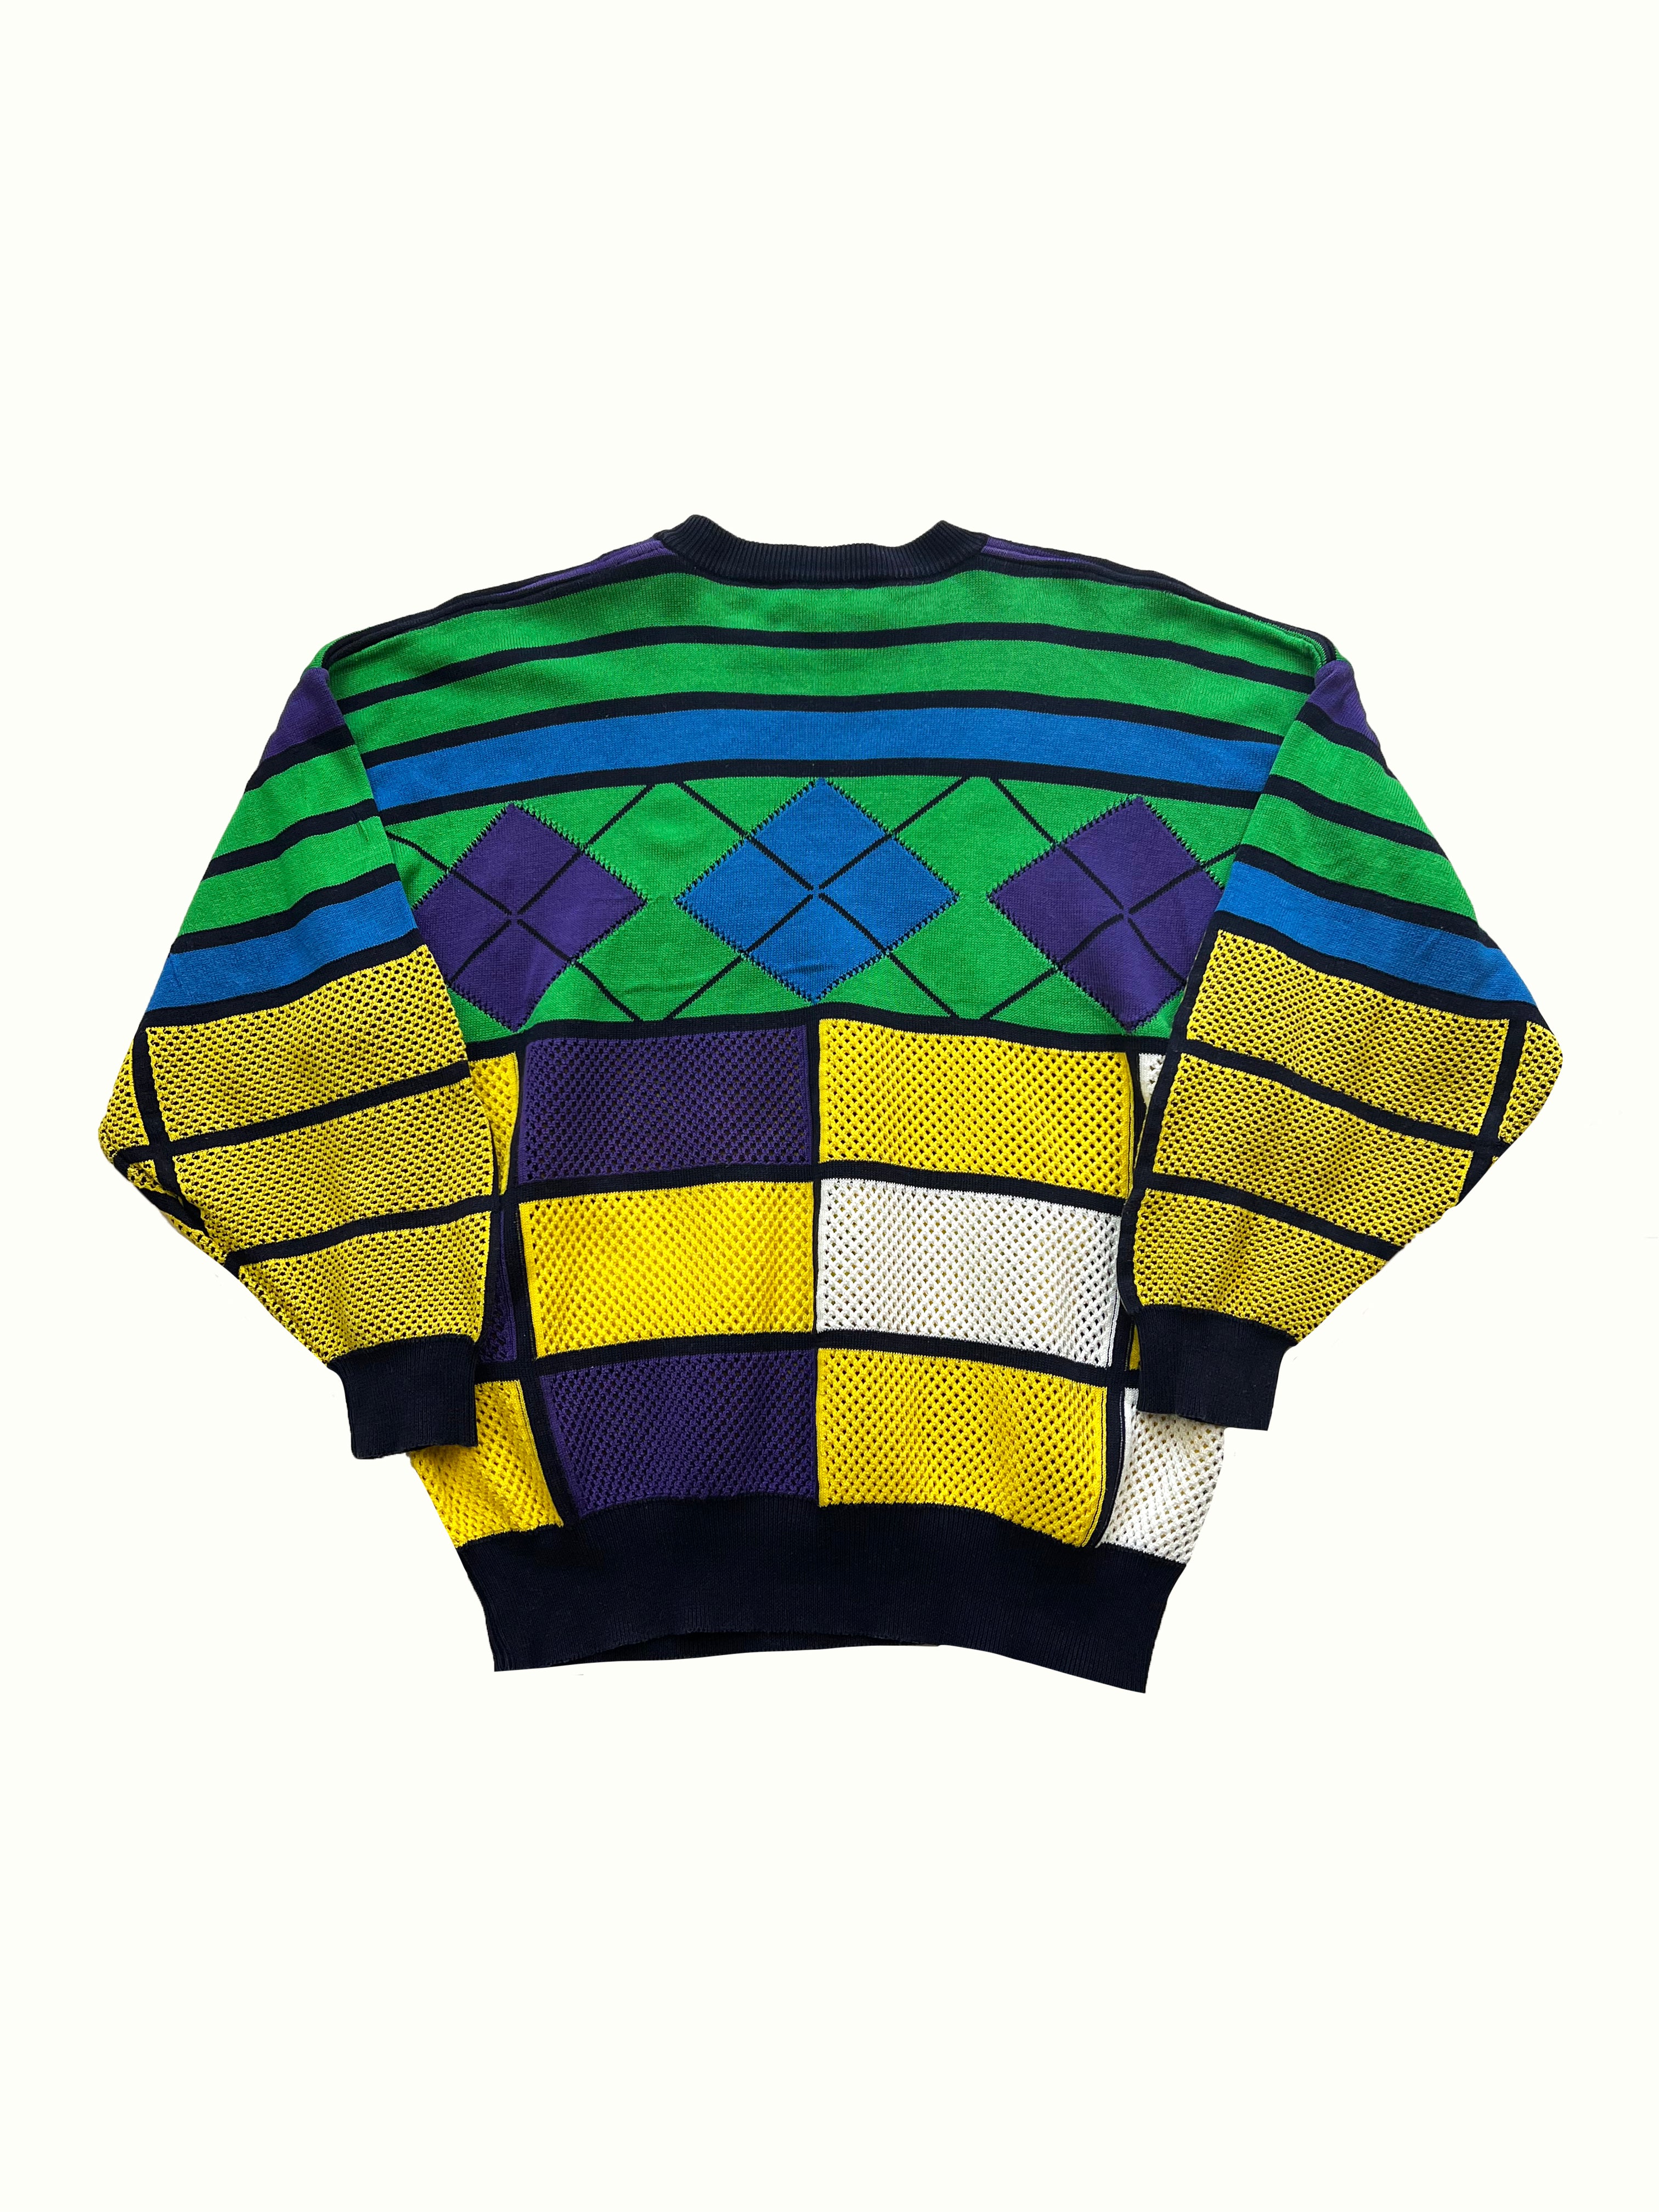 Instante Versace Wool Multi Knit 1992